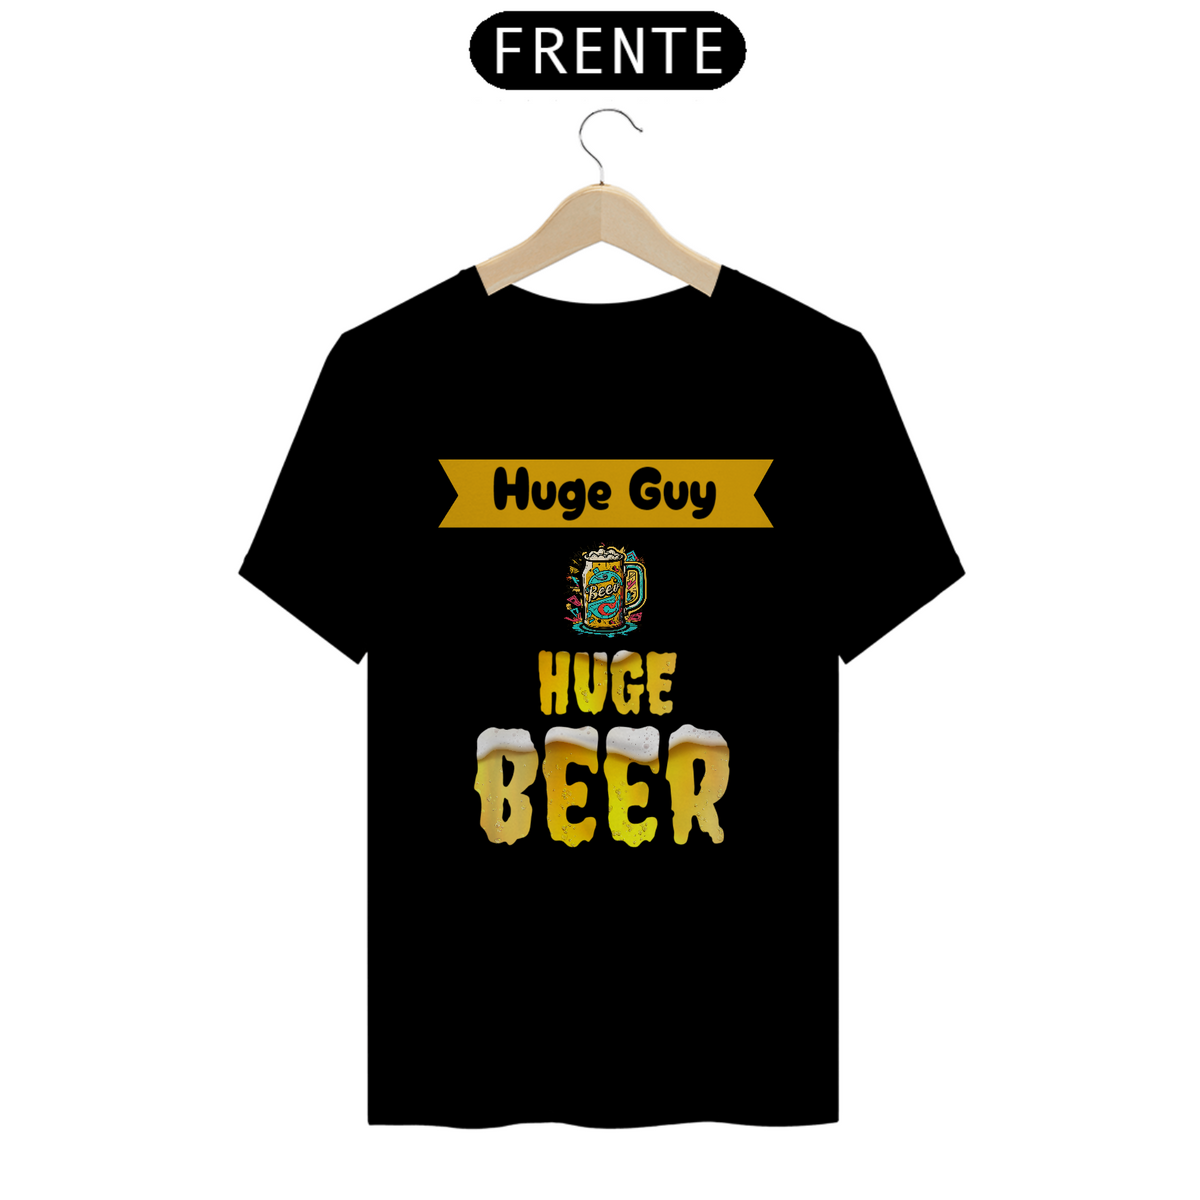 Nome do produto: Camiseta Premium - Huge Guy, Huge Beer